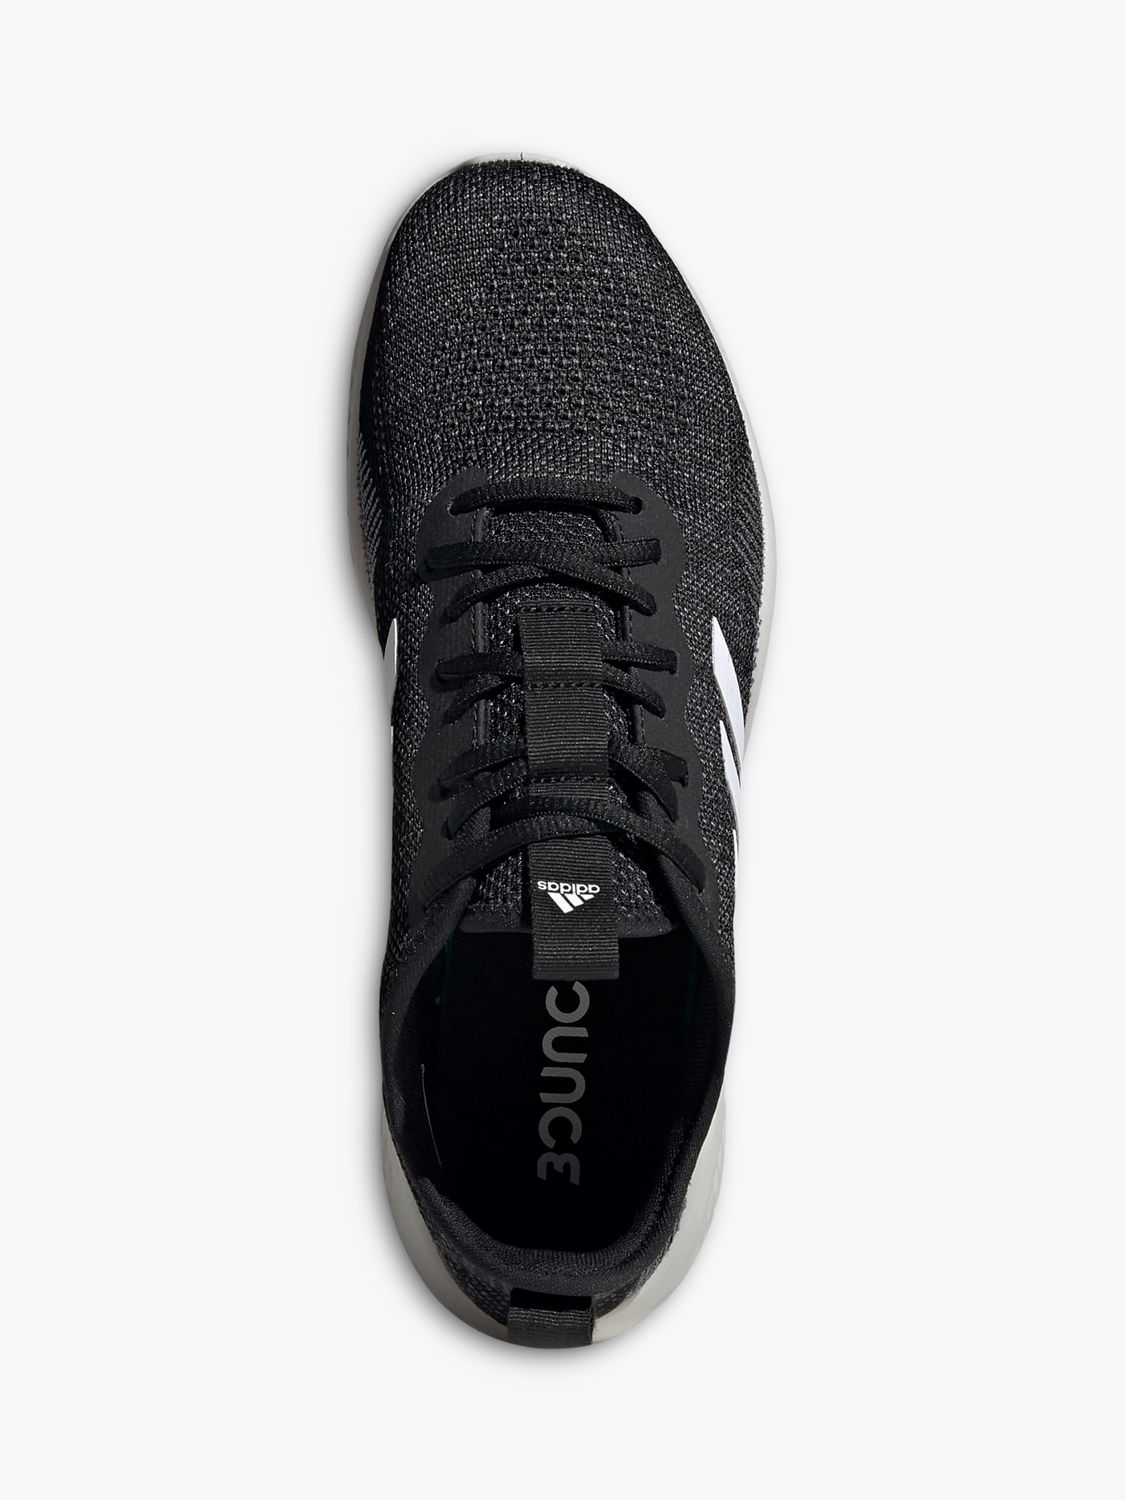 adidas men's fluid flow running shoe